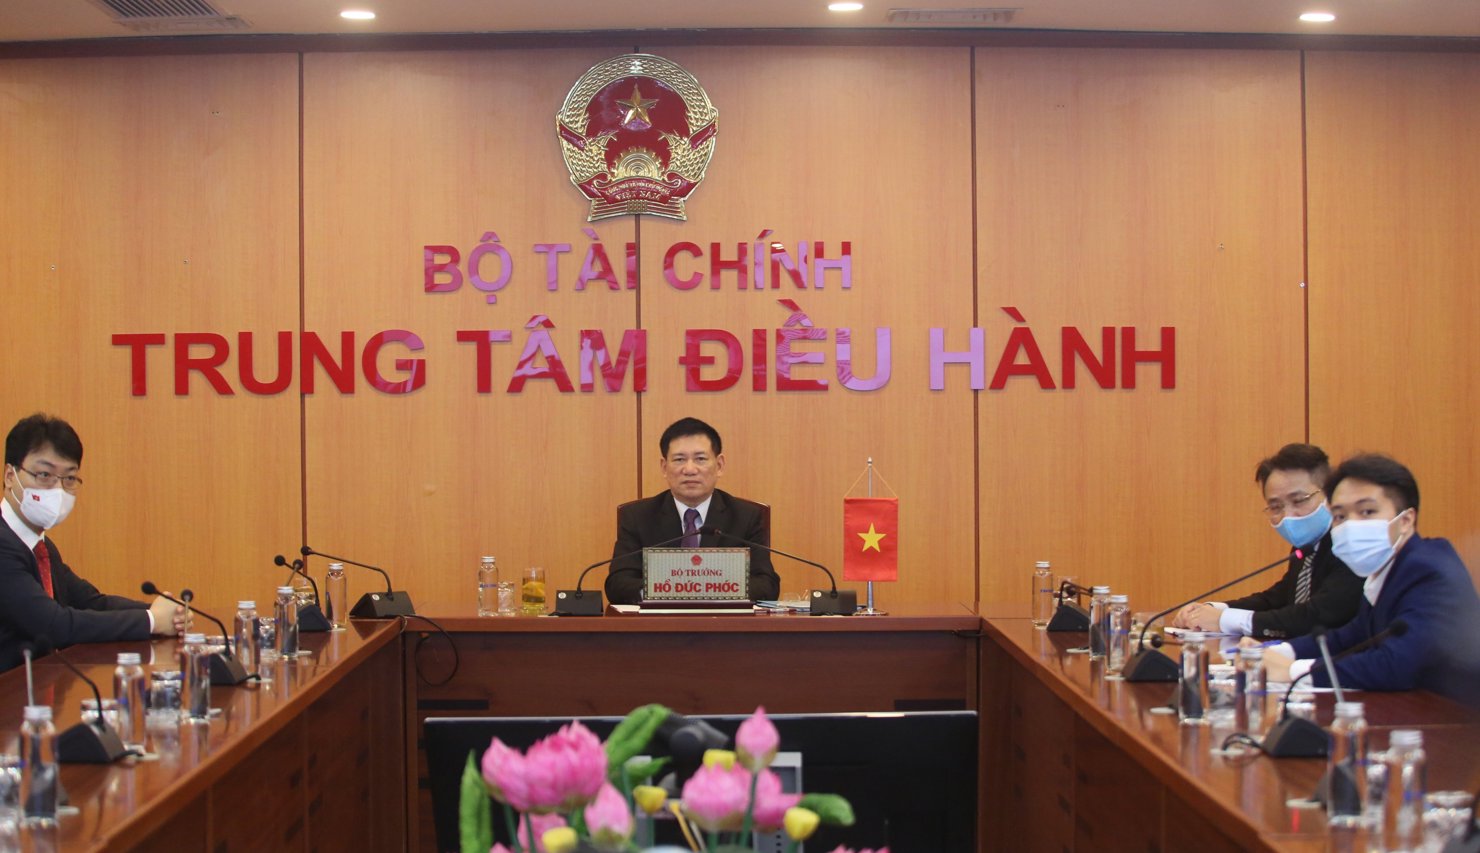 Bộ trưởng Bộ Tài chính Việt Nam Hồ Đức Phớc tại điểm cầu Bộ Tài chính Việt Nam.